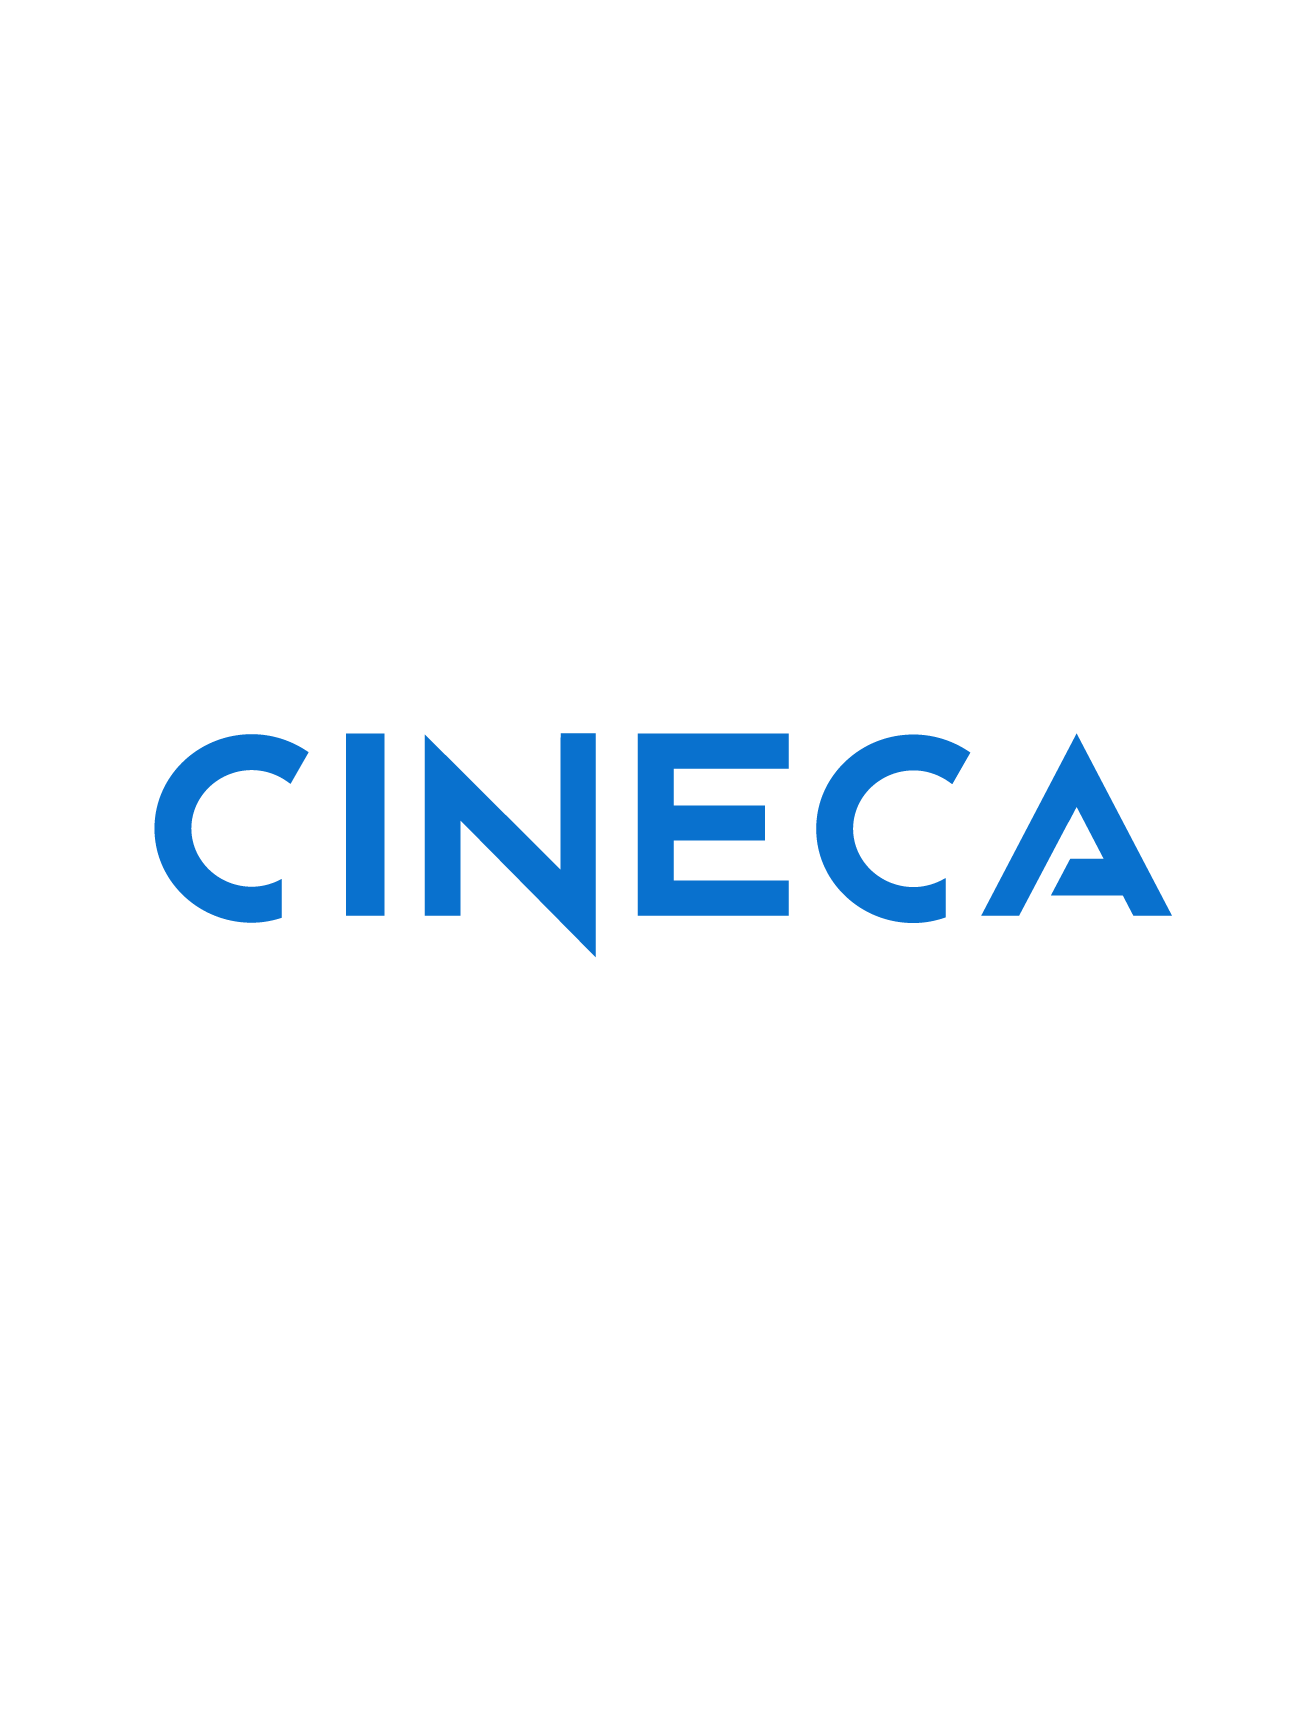 Cineca logo